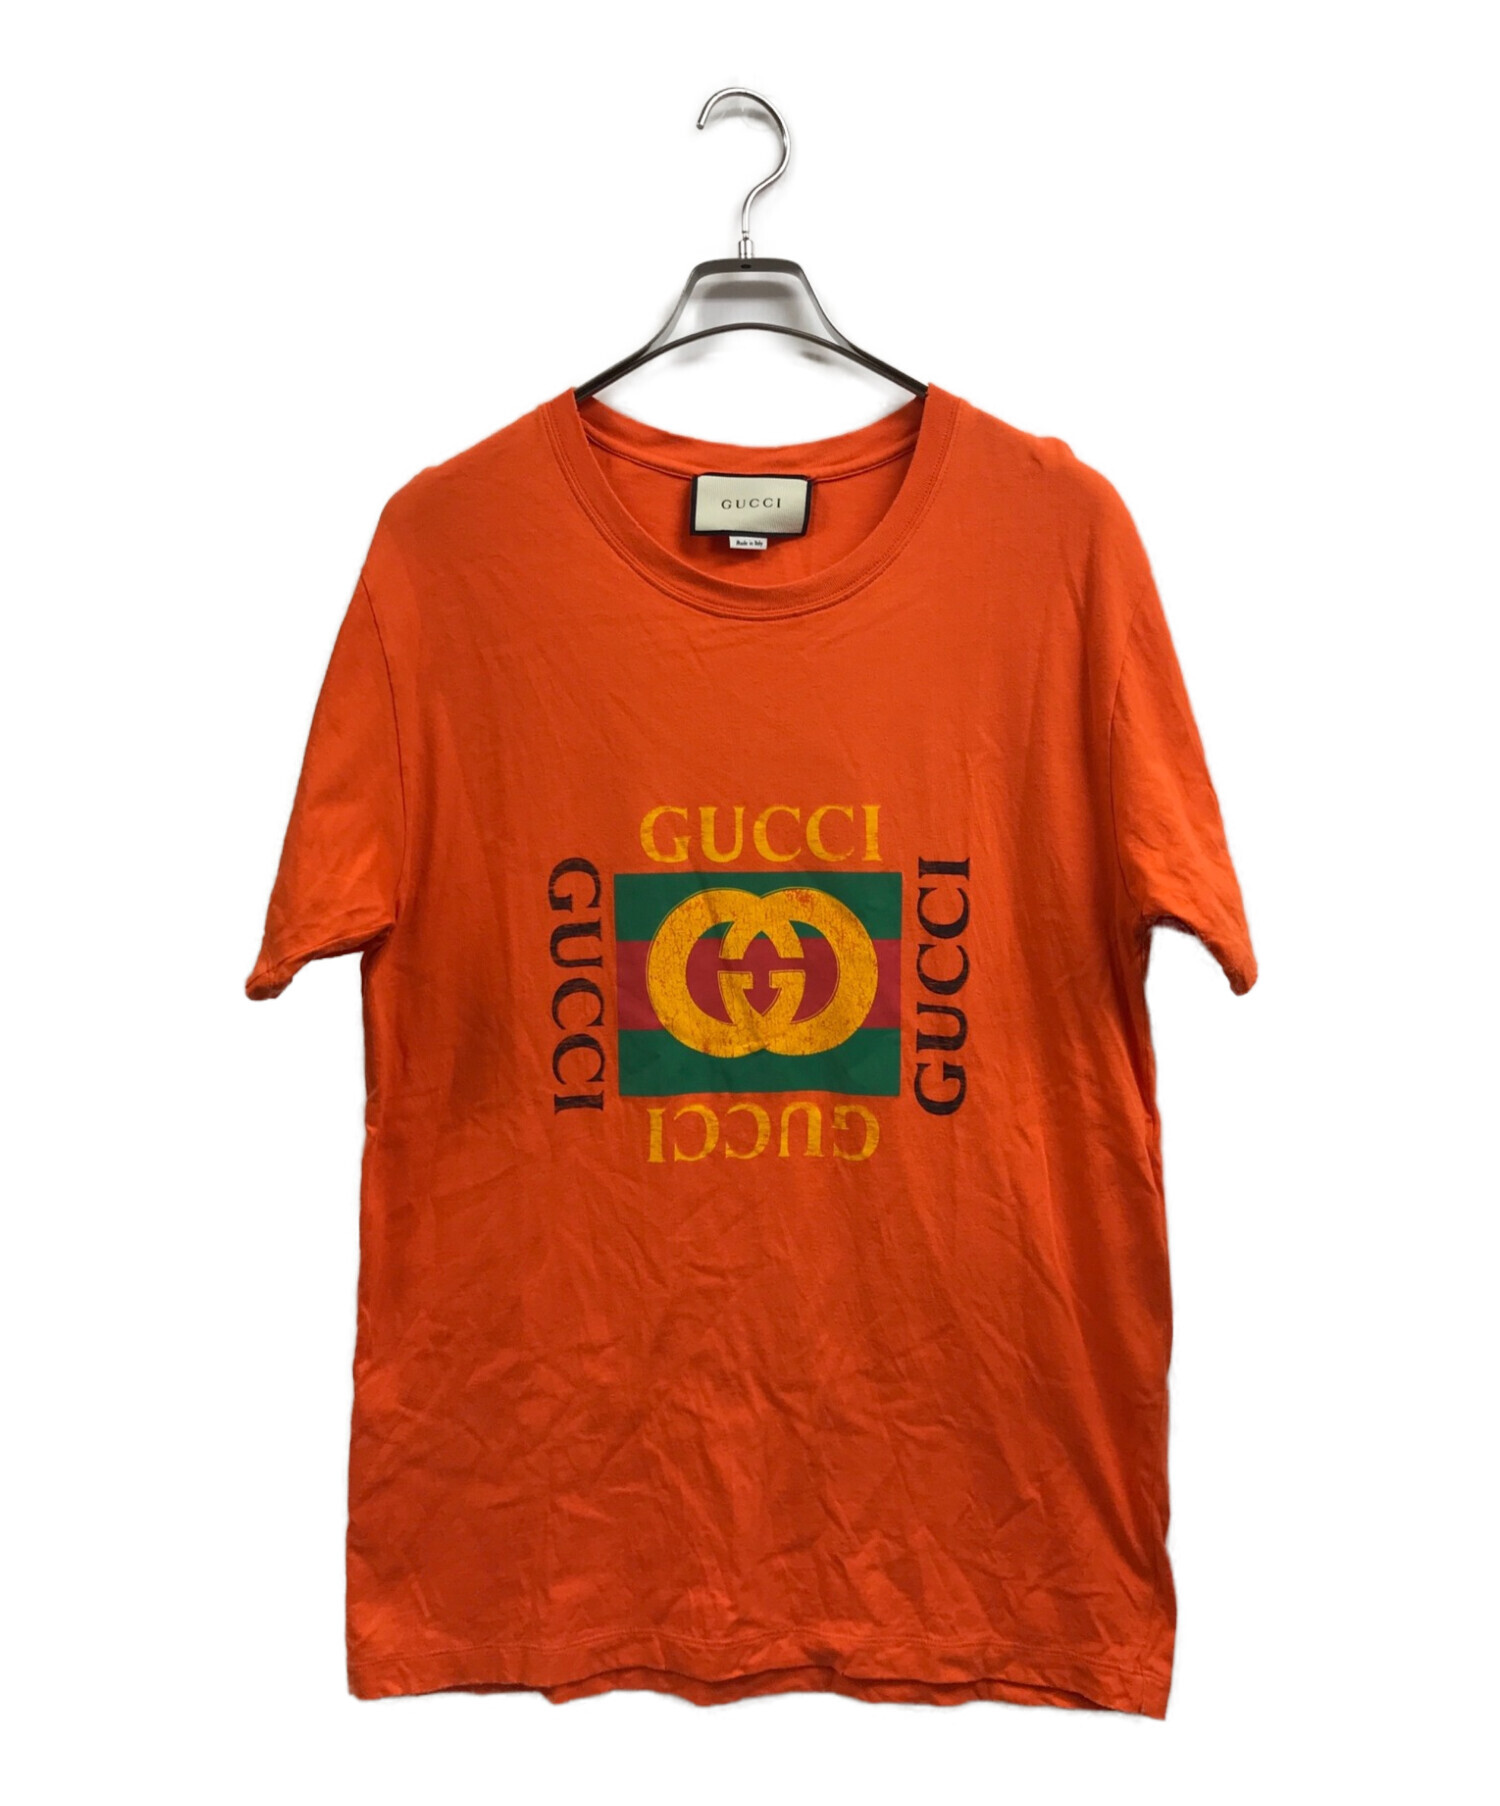 GUCCI (グッチ) ヴィンテージグリッターロゴプリントダメージTシャツ オレンジ サイズ:XS